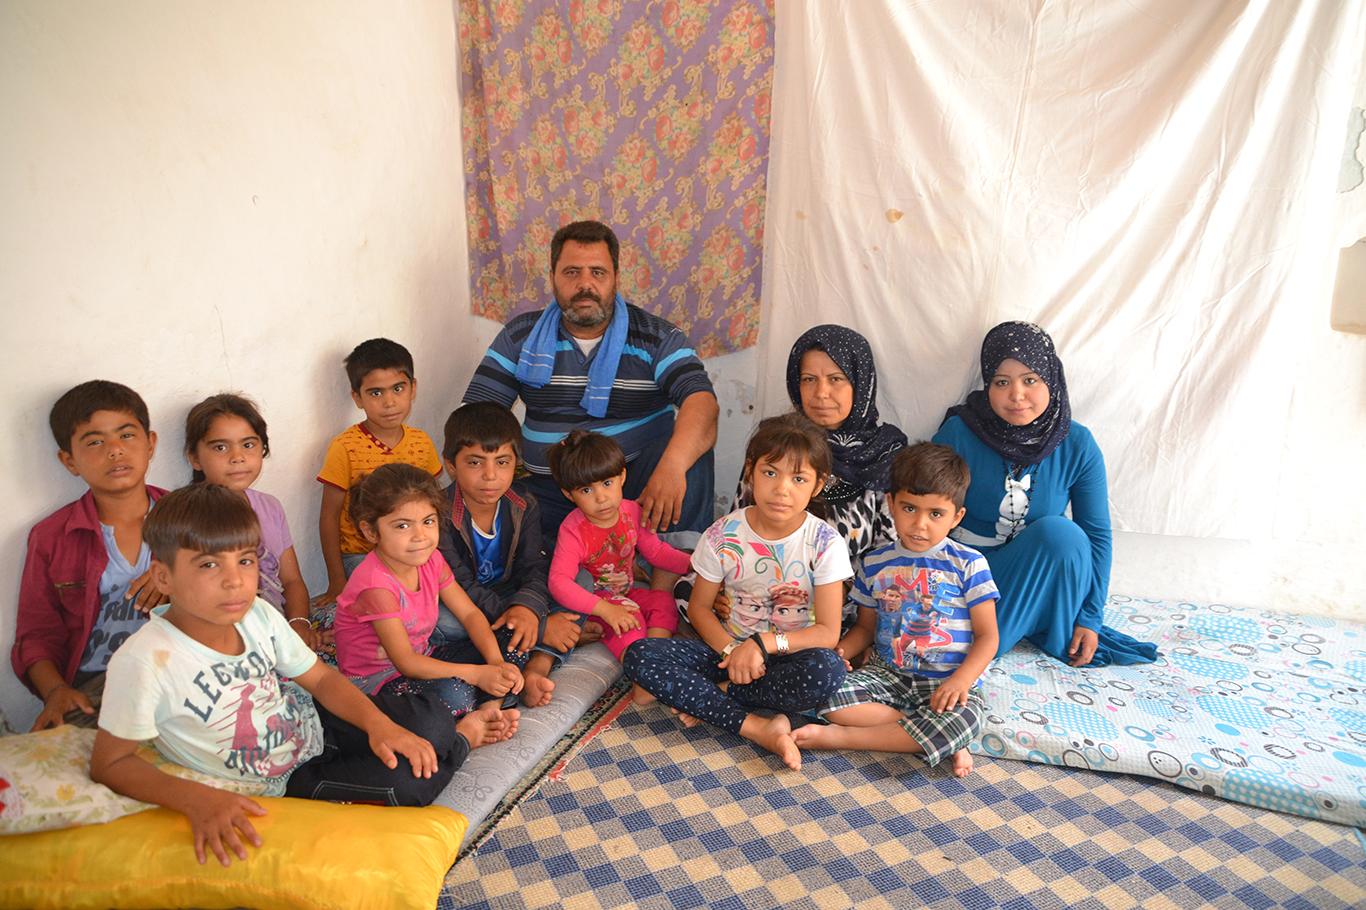 Suriyeli aile yardım bekliyor